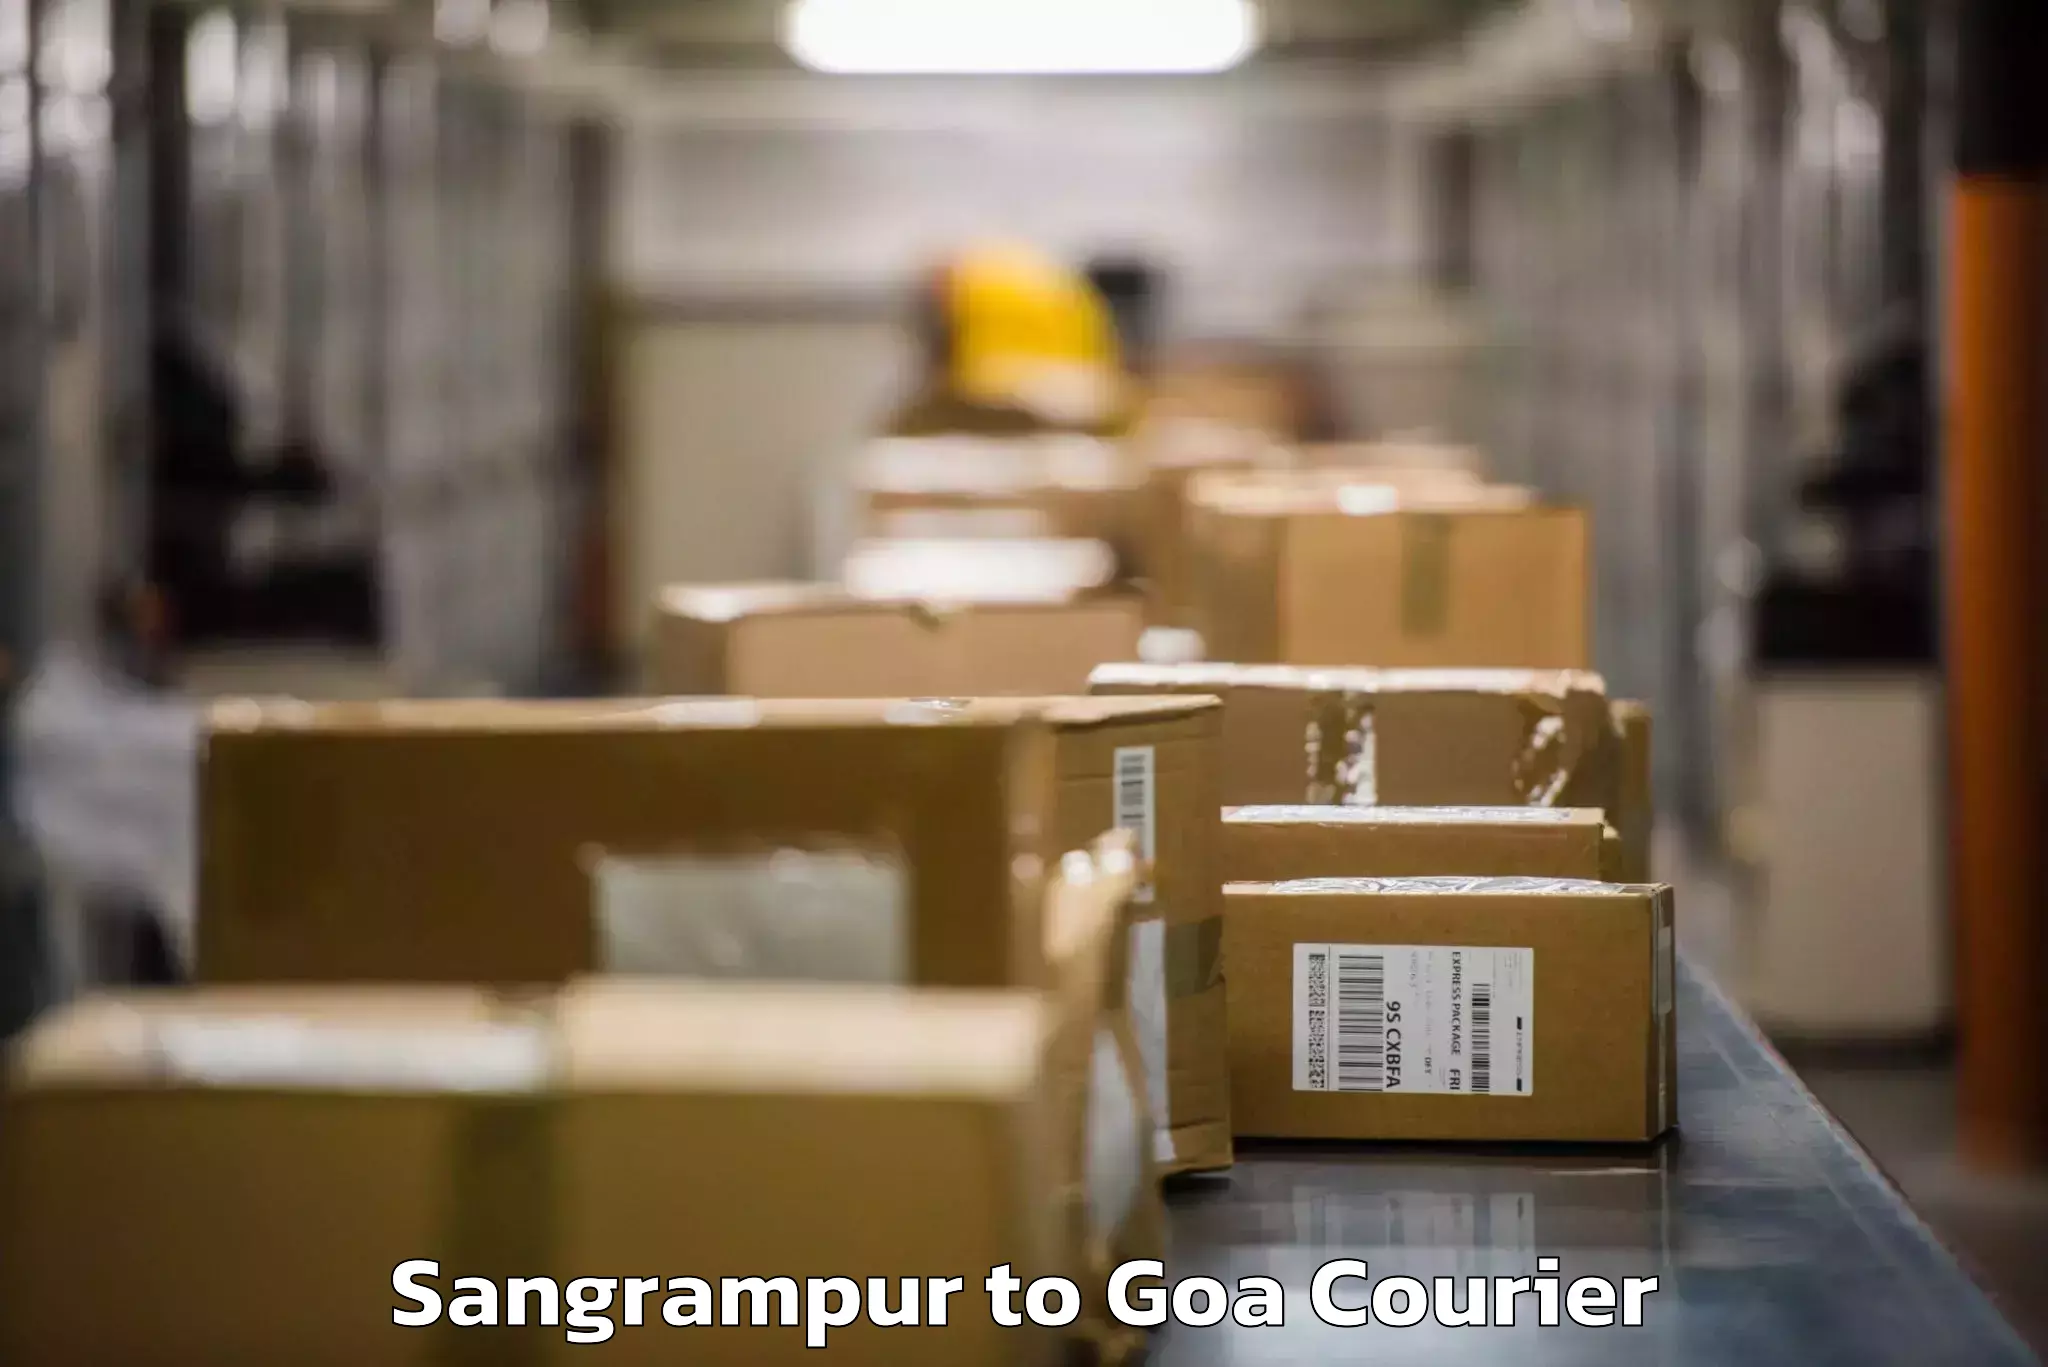 Luggage shipment tracking Sangrampur to Panaji